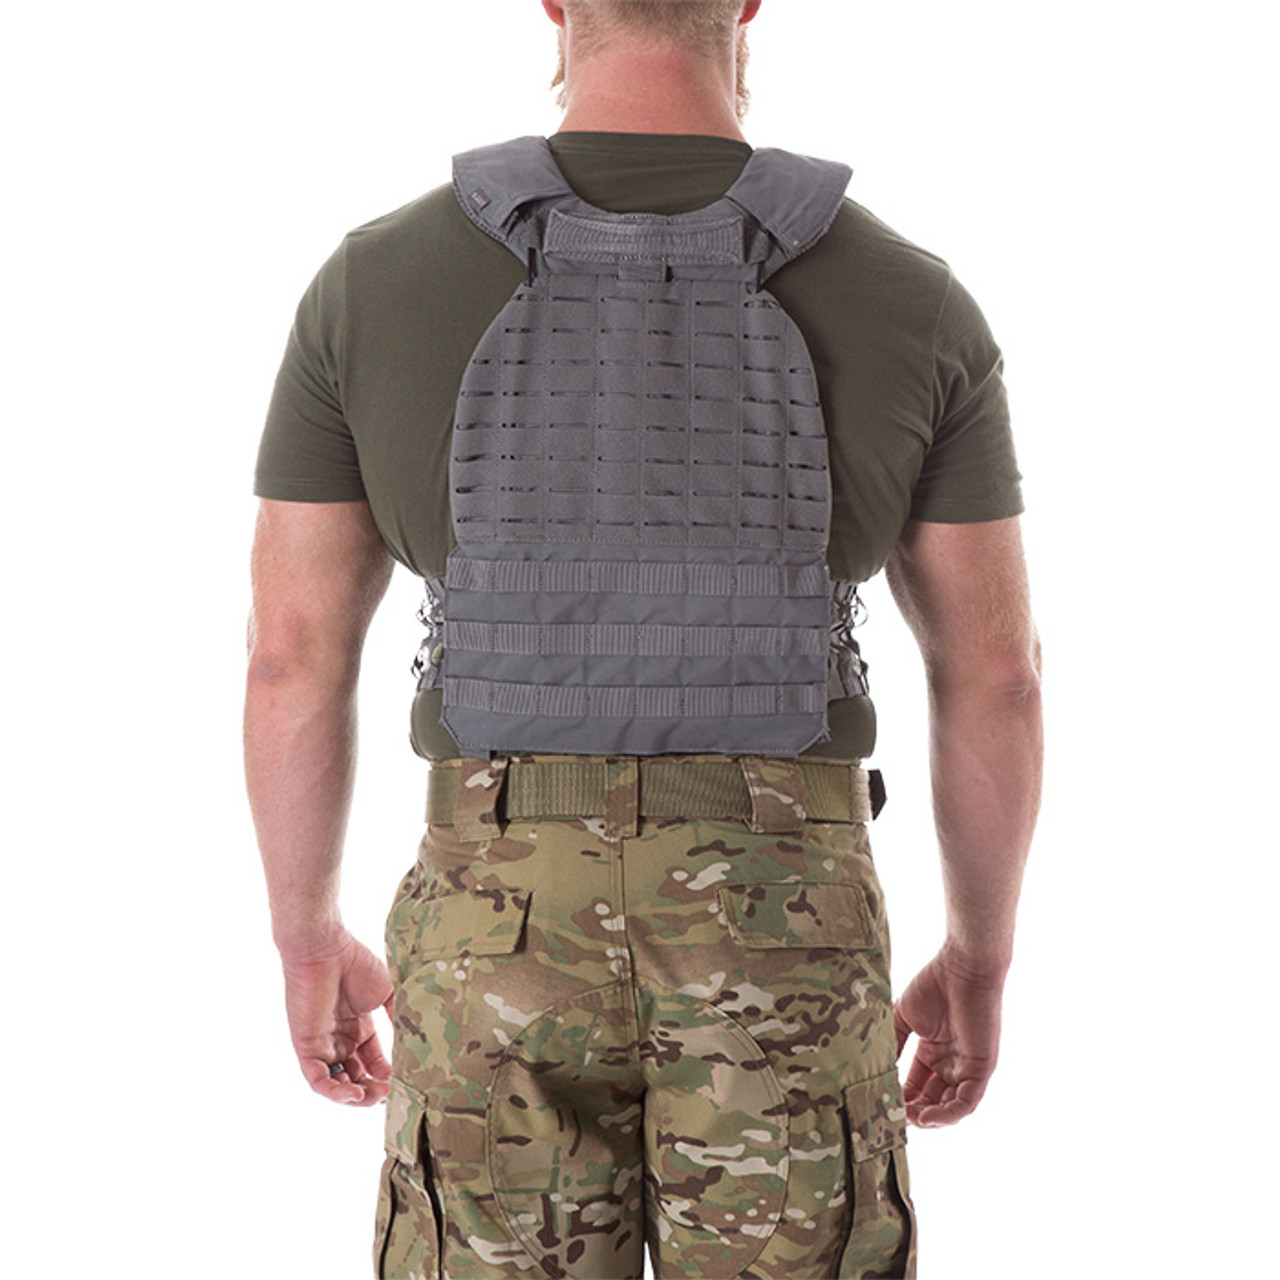 liberty uniform outer vest carrier